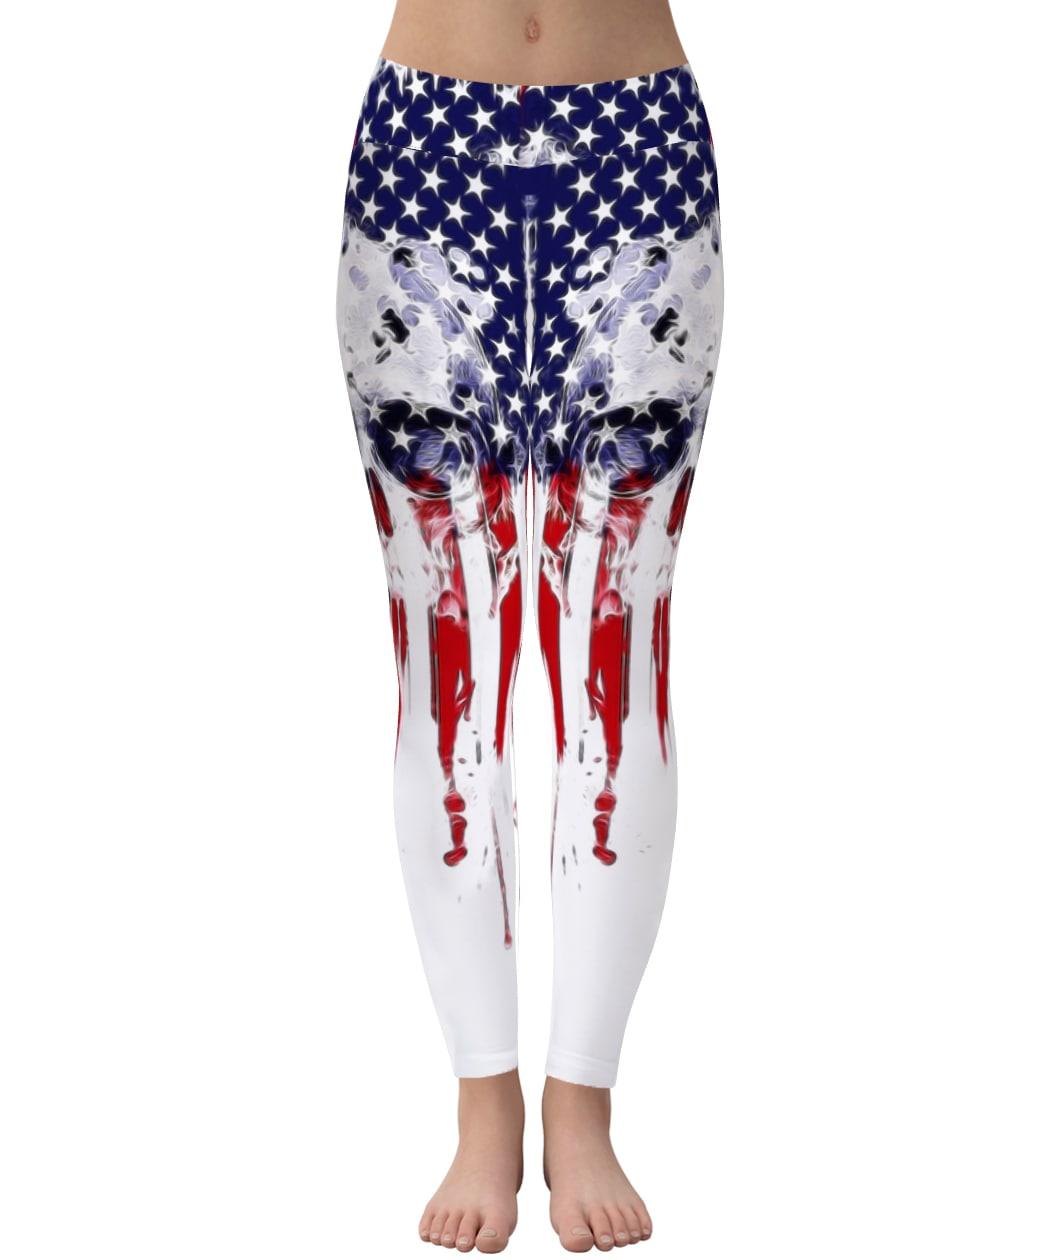 Combo Skull Flag Tank Top + Leggings Outfit For Women - Wonder Skull